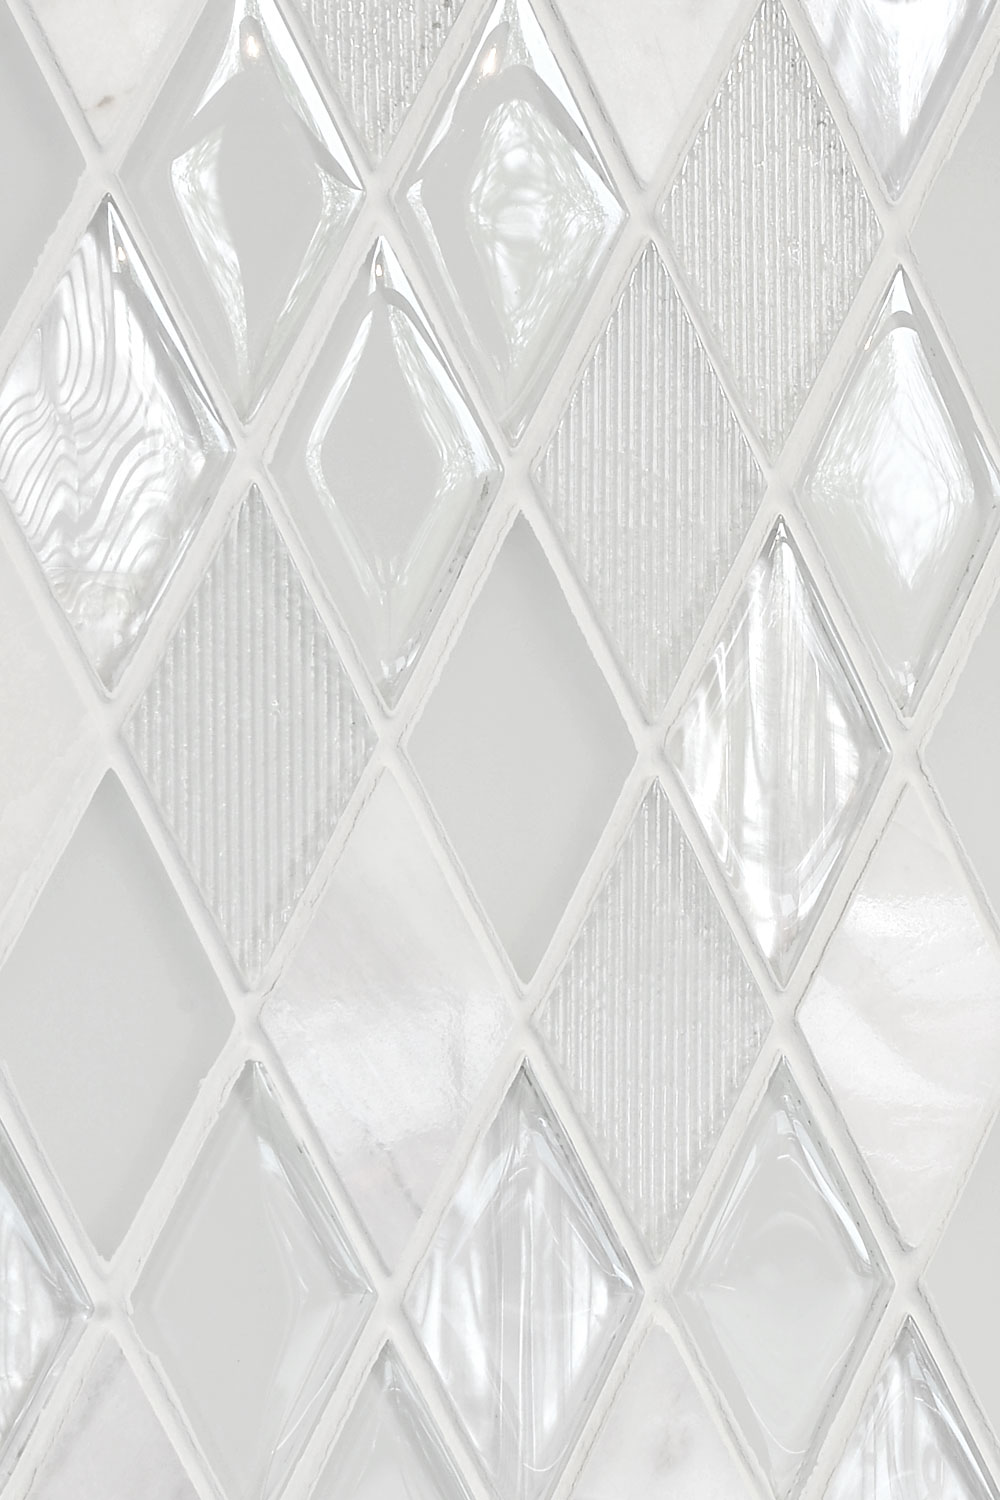 Elegant White Glass Marble Backsplash Tile BA62046 4